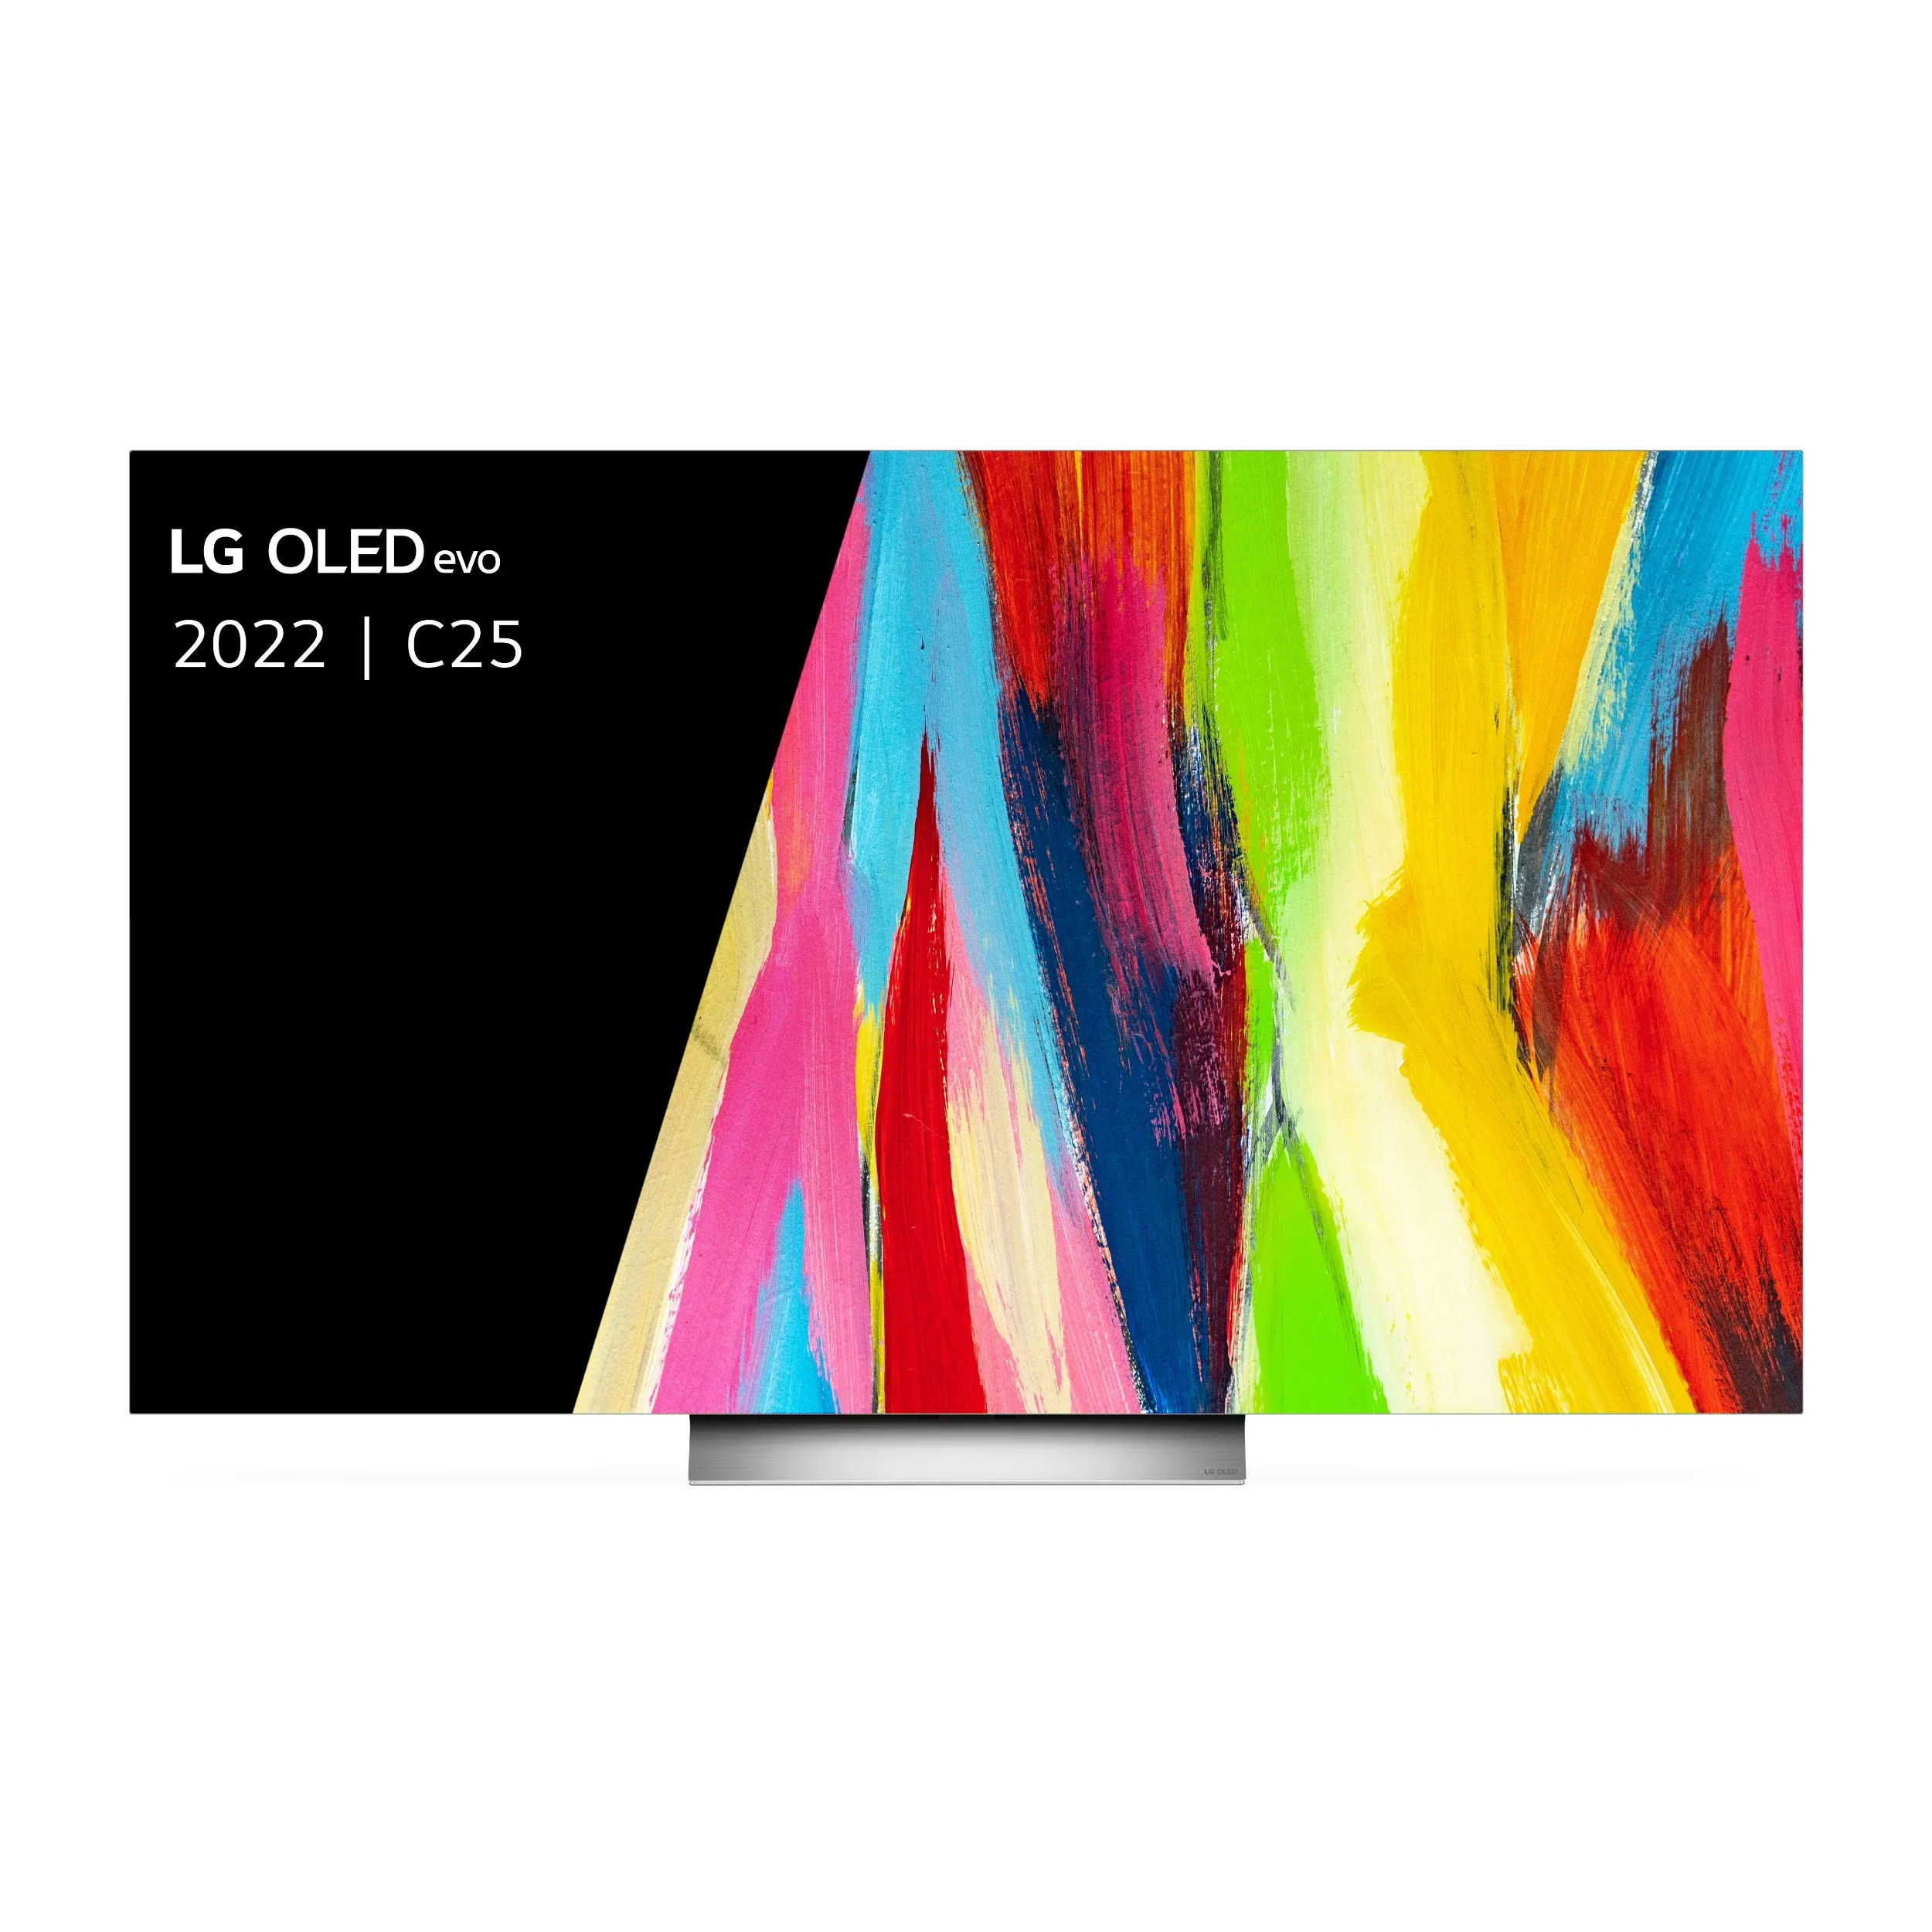 LG OLED55C25LB - 55 inch OLED TV